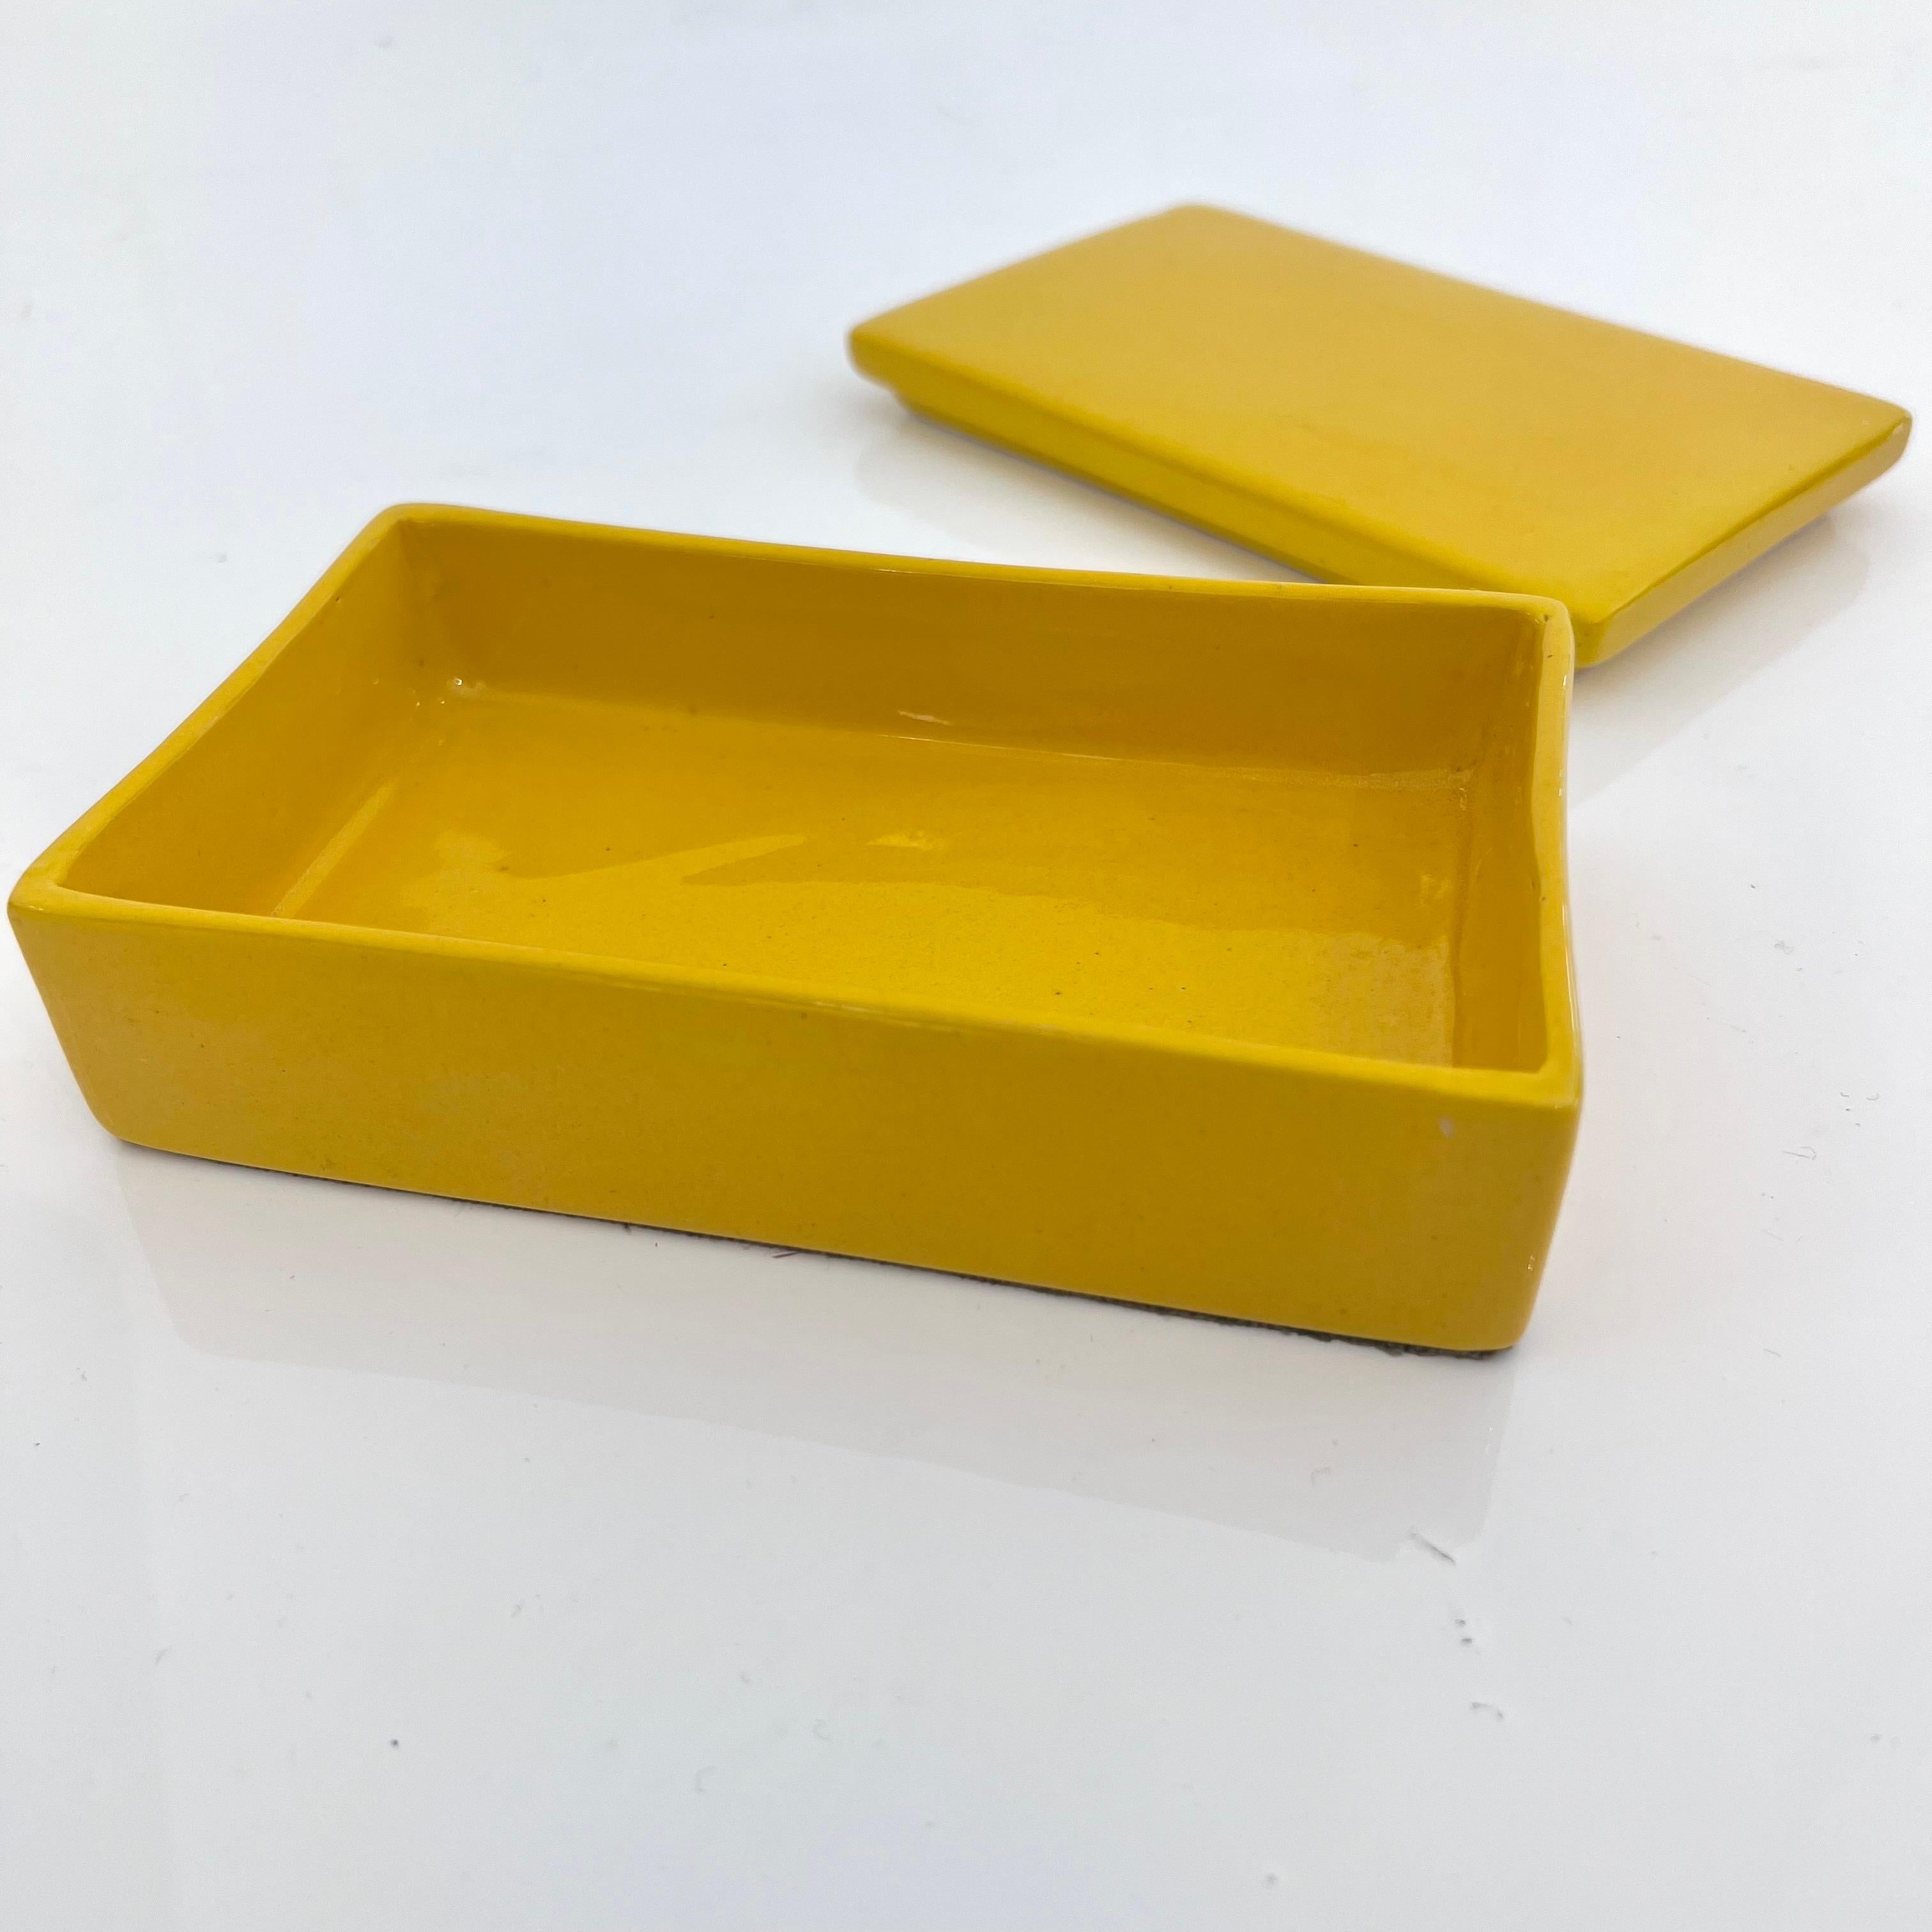 Keramikdose mit Glasur, hergestellt in Italien von Raymor, ca. 1960er Jahre. Die leuchtend gelbe Glasur bedeckt die gesamte Außenseite der Dose und auch das Innere der Dose. Toller Vintage-Zustand. Lustige Aufbewahrungsbox und Tischobjekt.